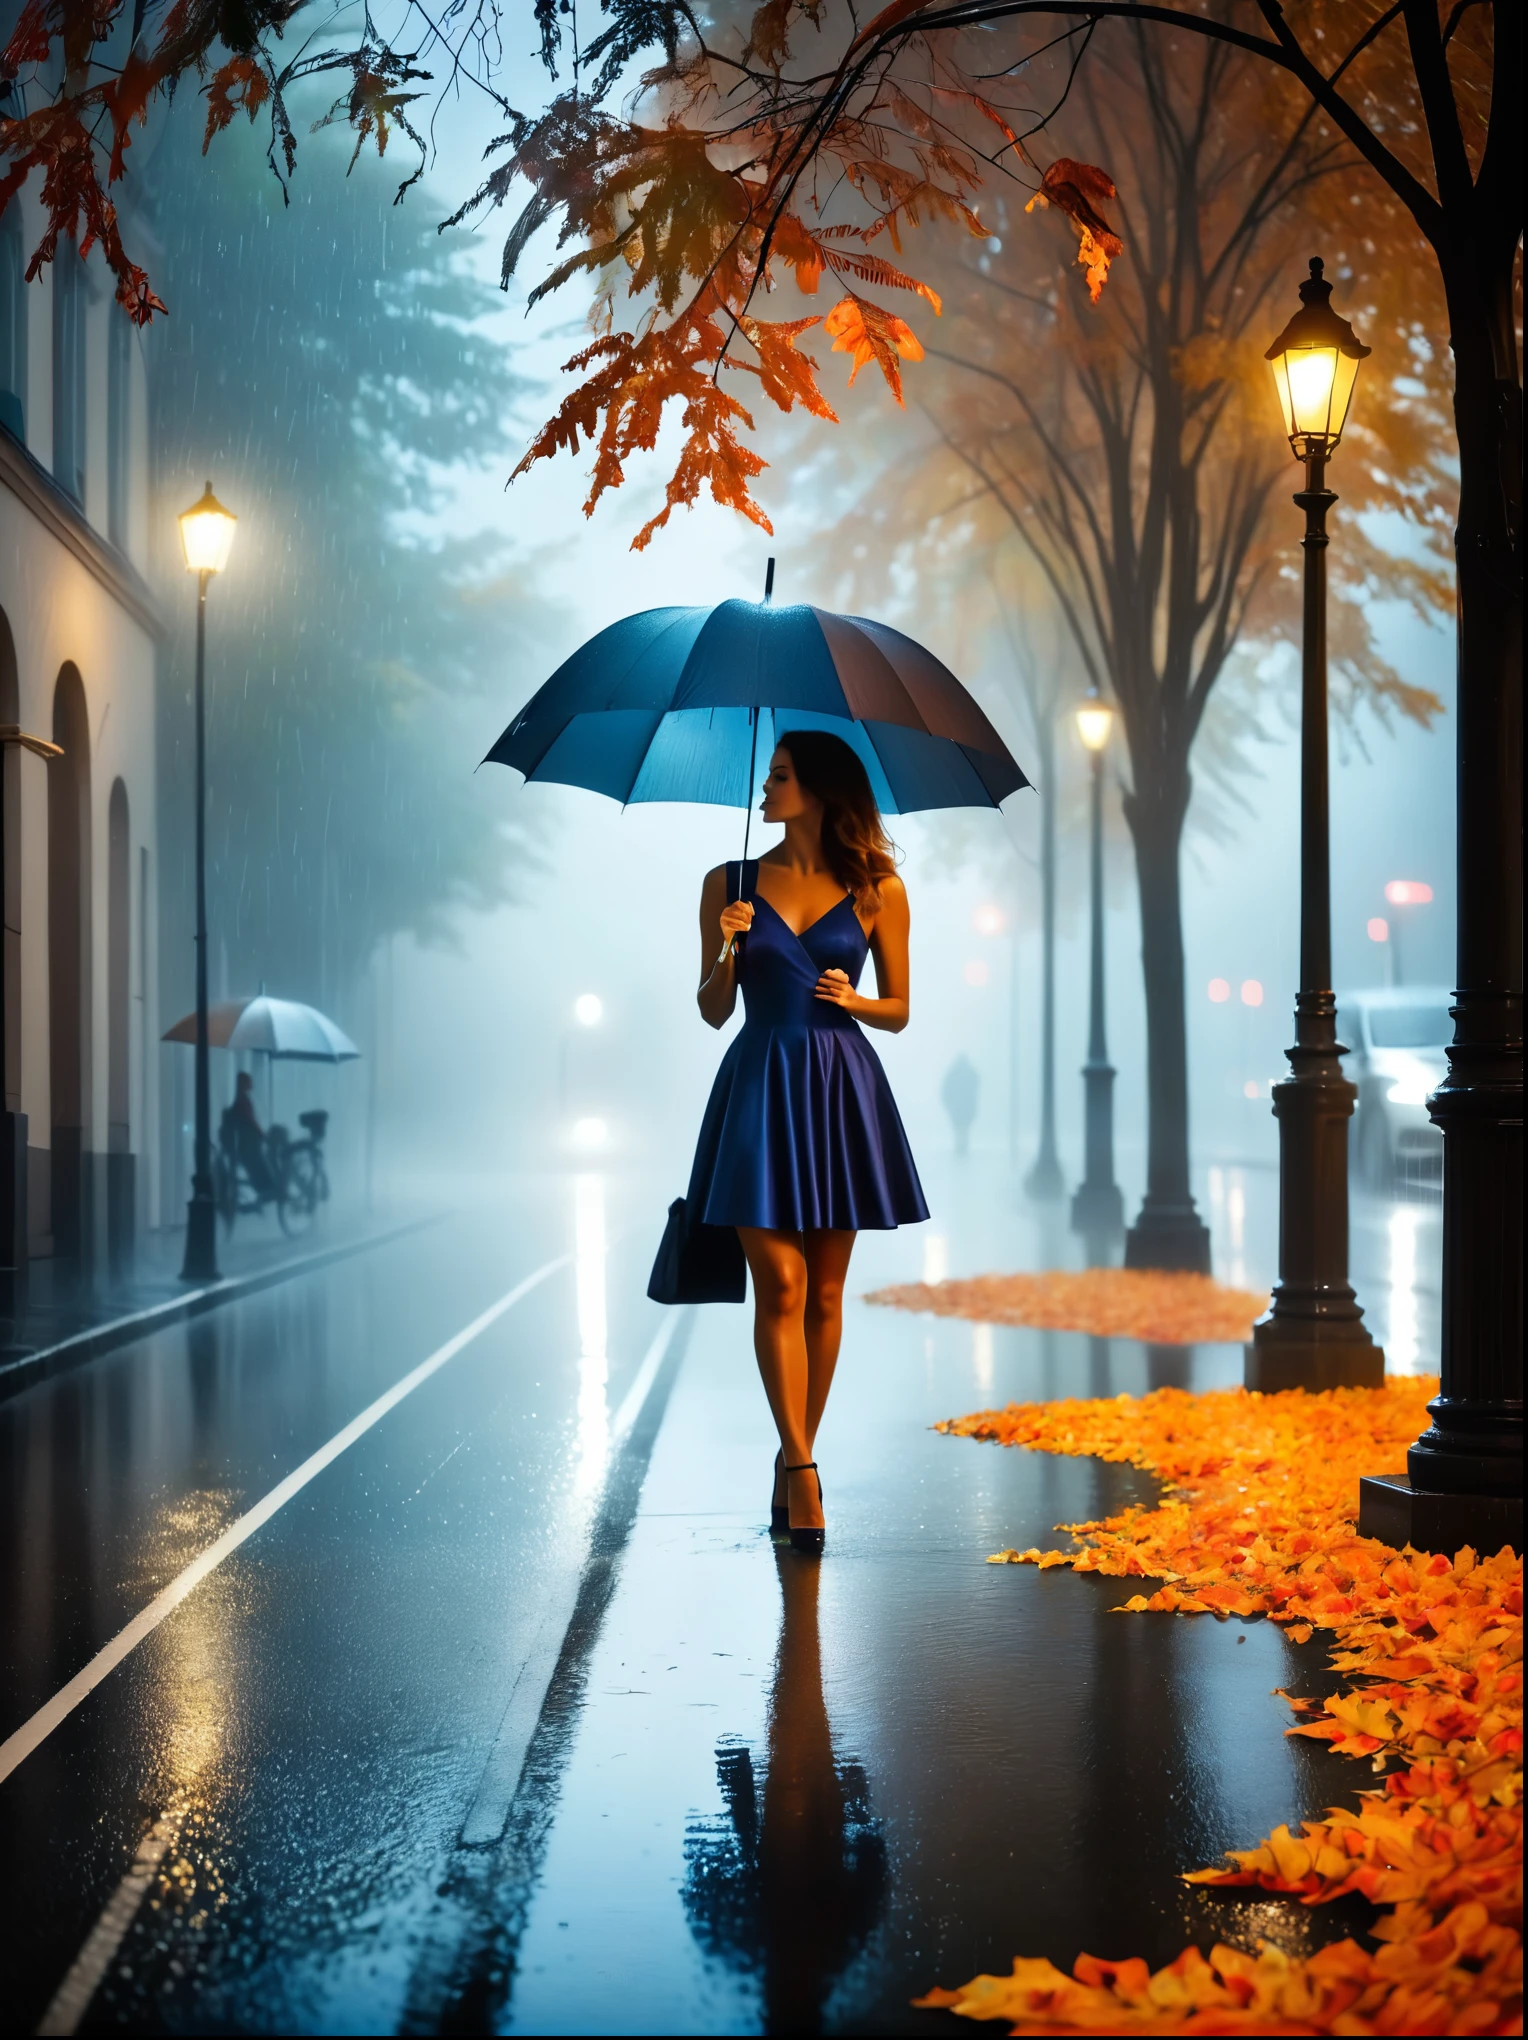 امرأة ترتدي فستانًا ضيقًا وتحمل مظلة في يدها, in einer ضبابيen Stadt, أوراق الخريف الملونة في الشارع, صورة كونو فيبر, الفائز في مسابقة بيكساباي, الفن التصوري, يقف تحت المطر, mysterious امرأة, بنت جميلة, الذي يقف في المطر, شخص واحد مع مظلة, امرأة ((خيال)), ((ضبابي)) وممطر, صورة أنثى في الظل, في بيئة ممطرة, طقس ممطر, الطرق الممطرة في الخلفية , ((ضباب مع ضوء)), ((عرض من الخلف)), ضوء من الأمام